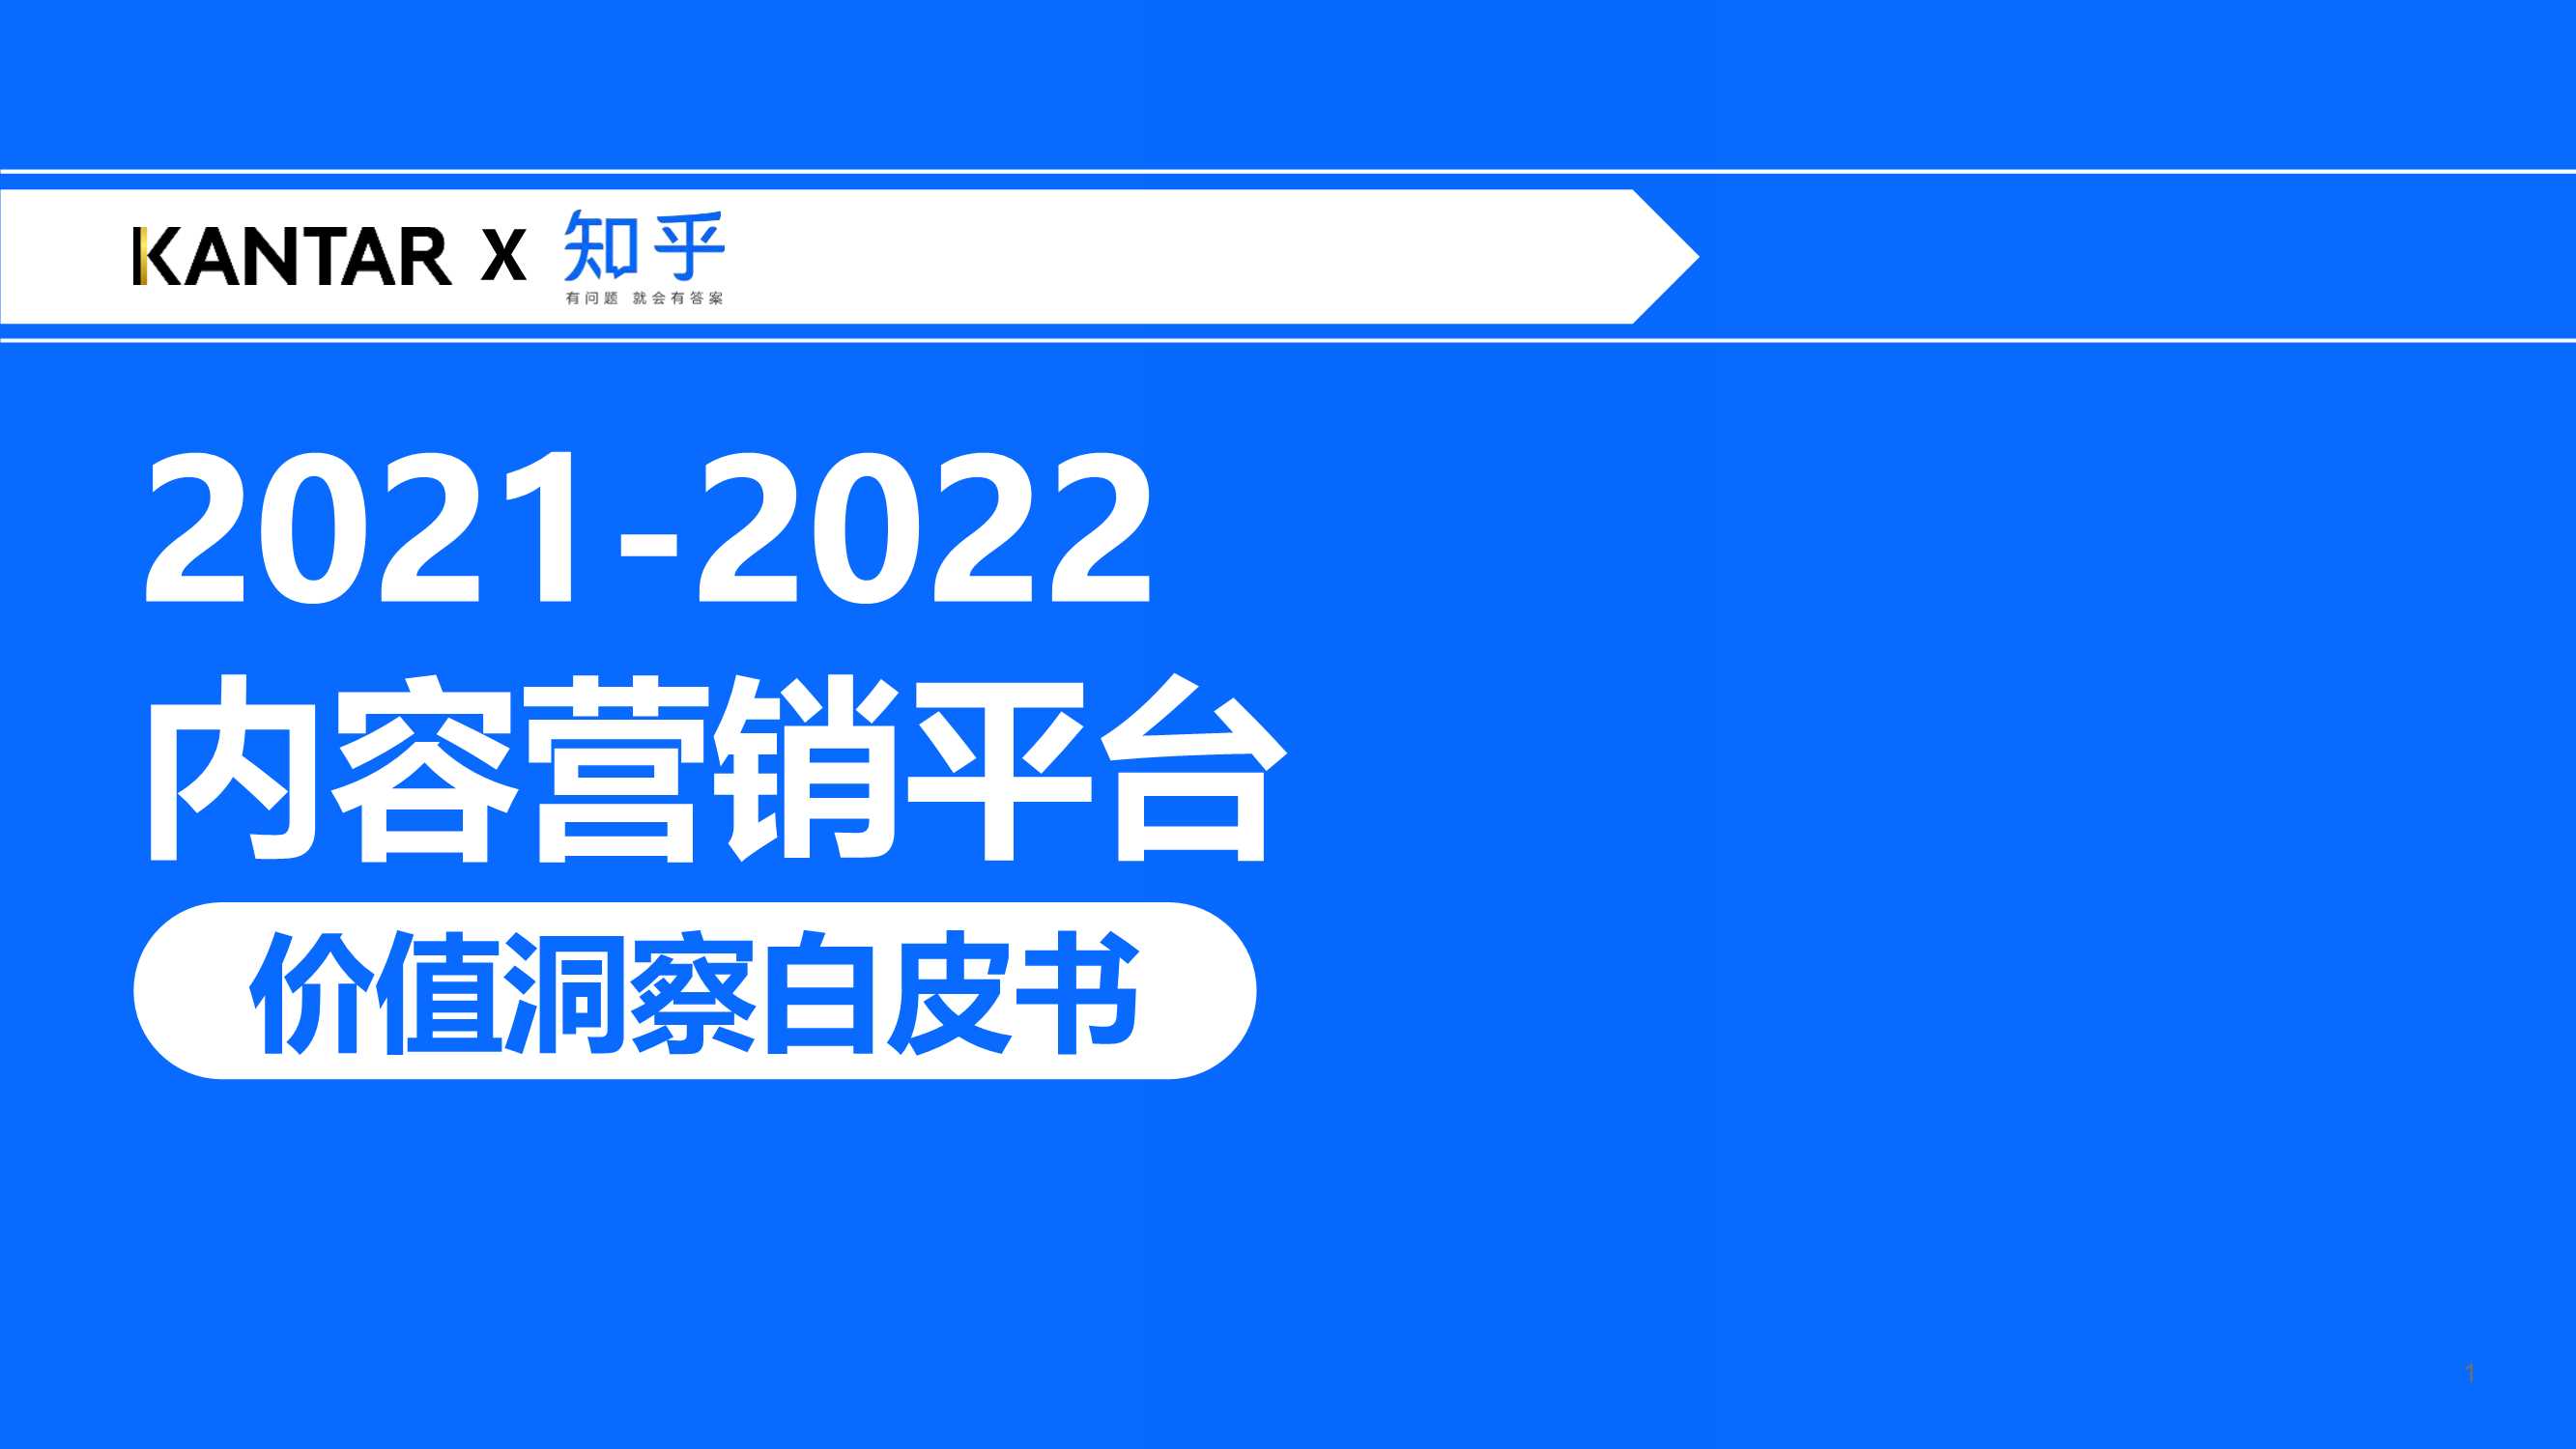 知乎-2021-2022内容营销平台价值洞察白皮书-2021.11-46页